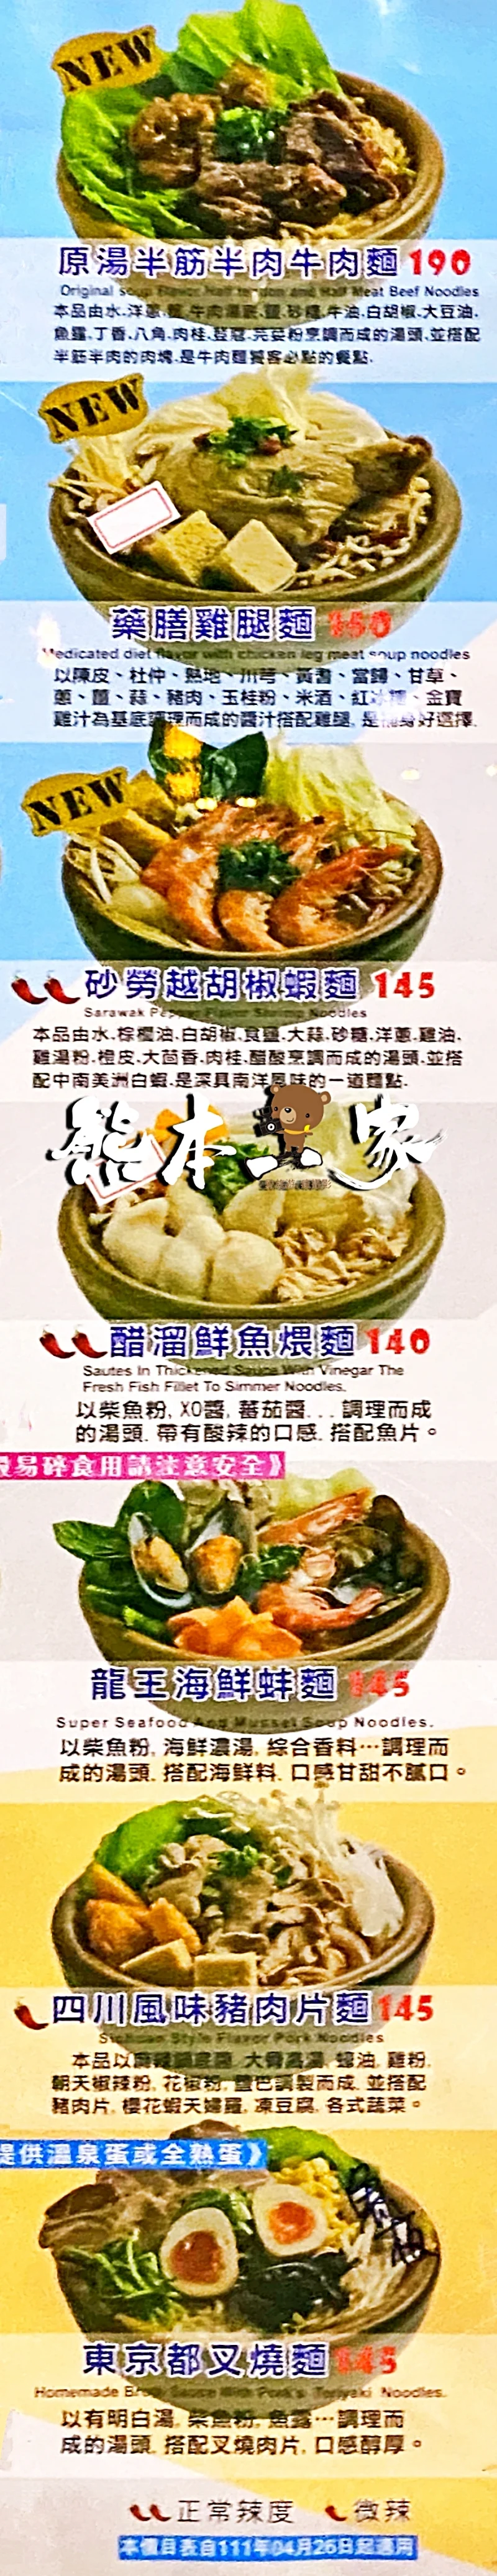 甘泉魚麵三峽北大店 菜單MENU